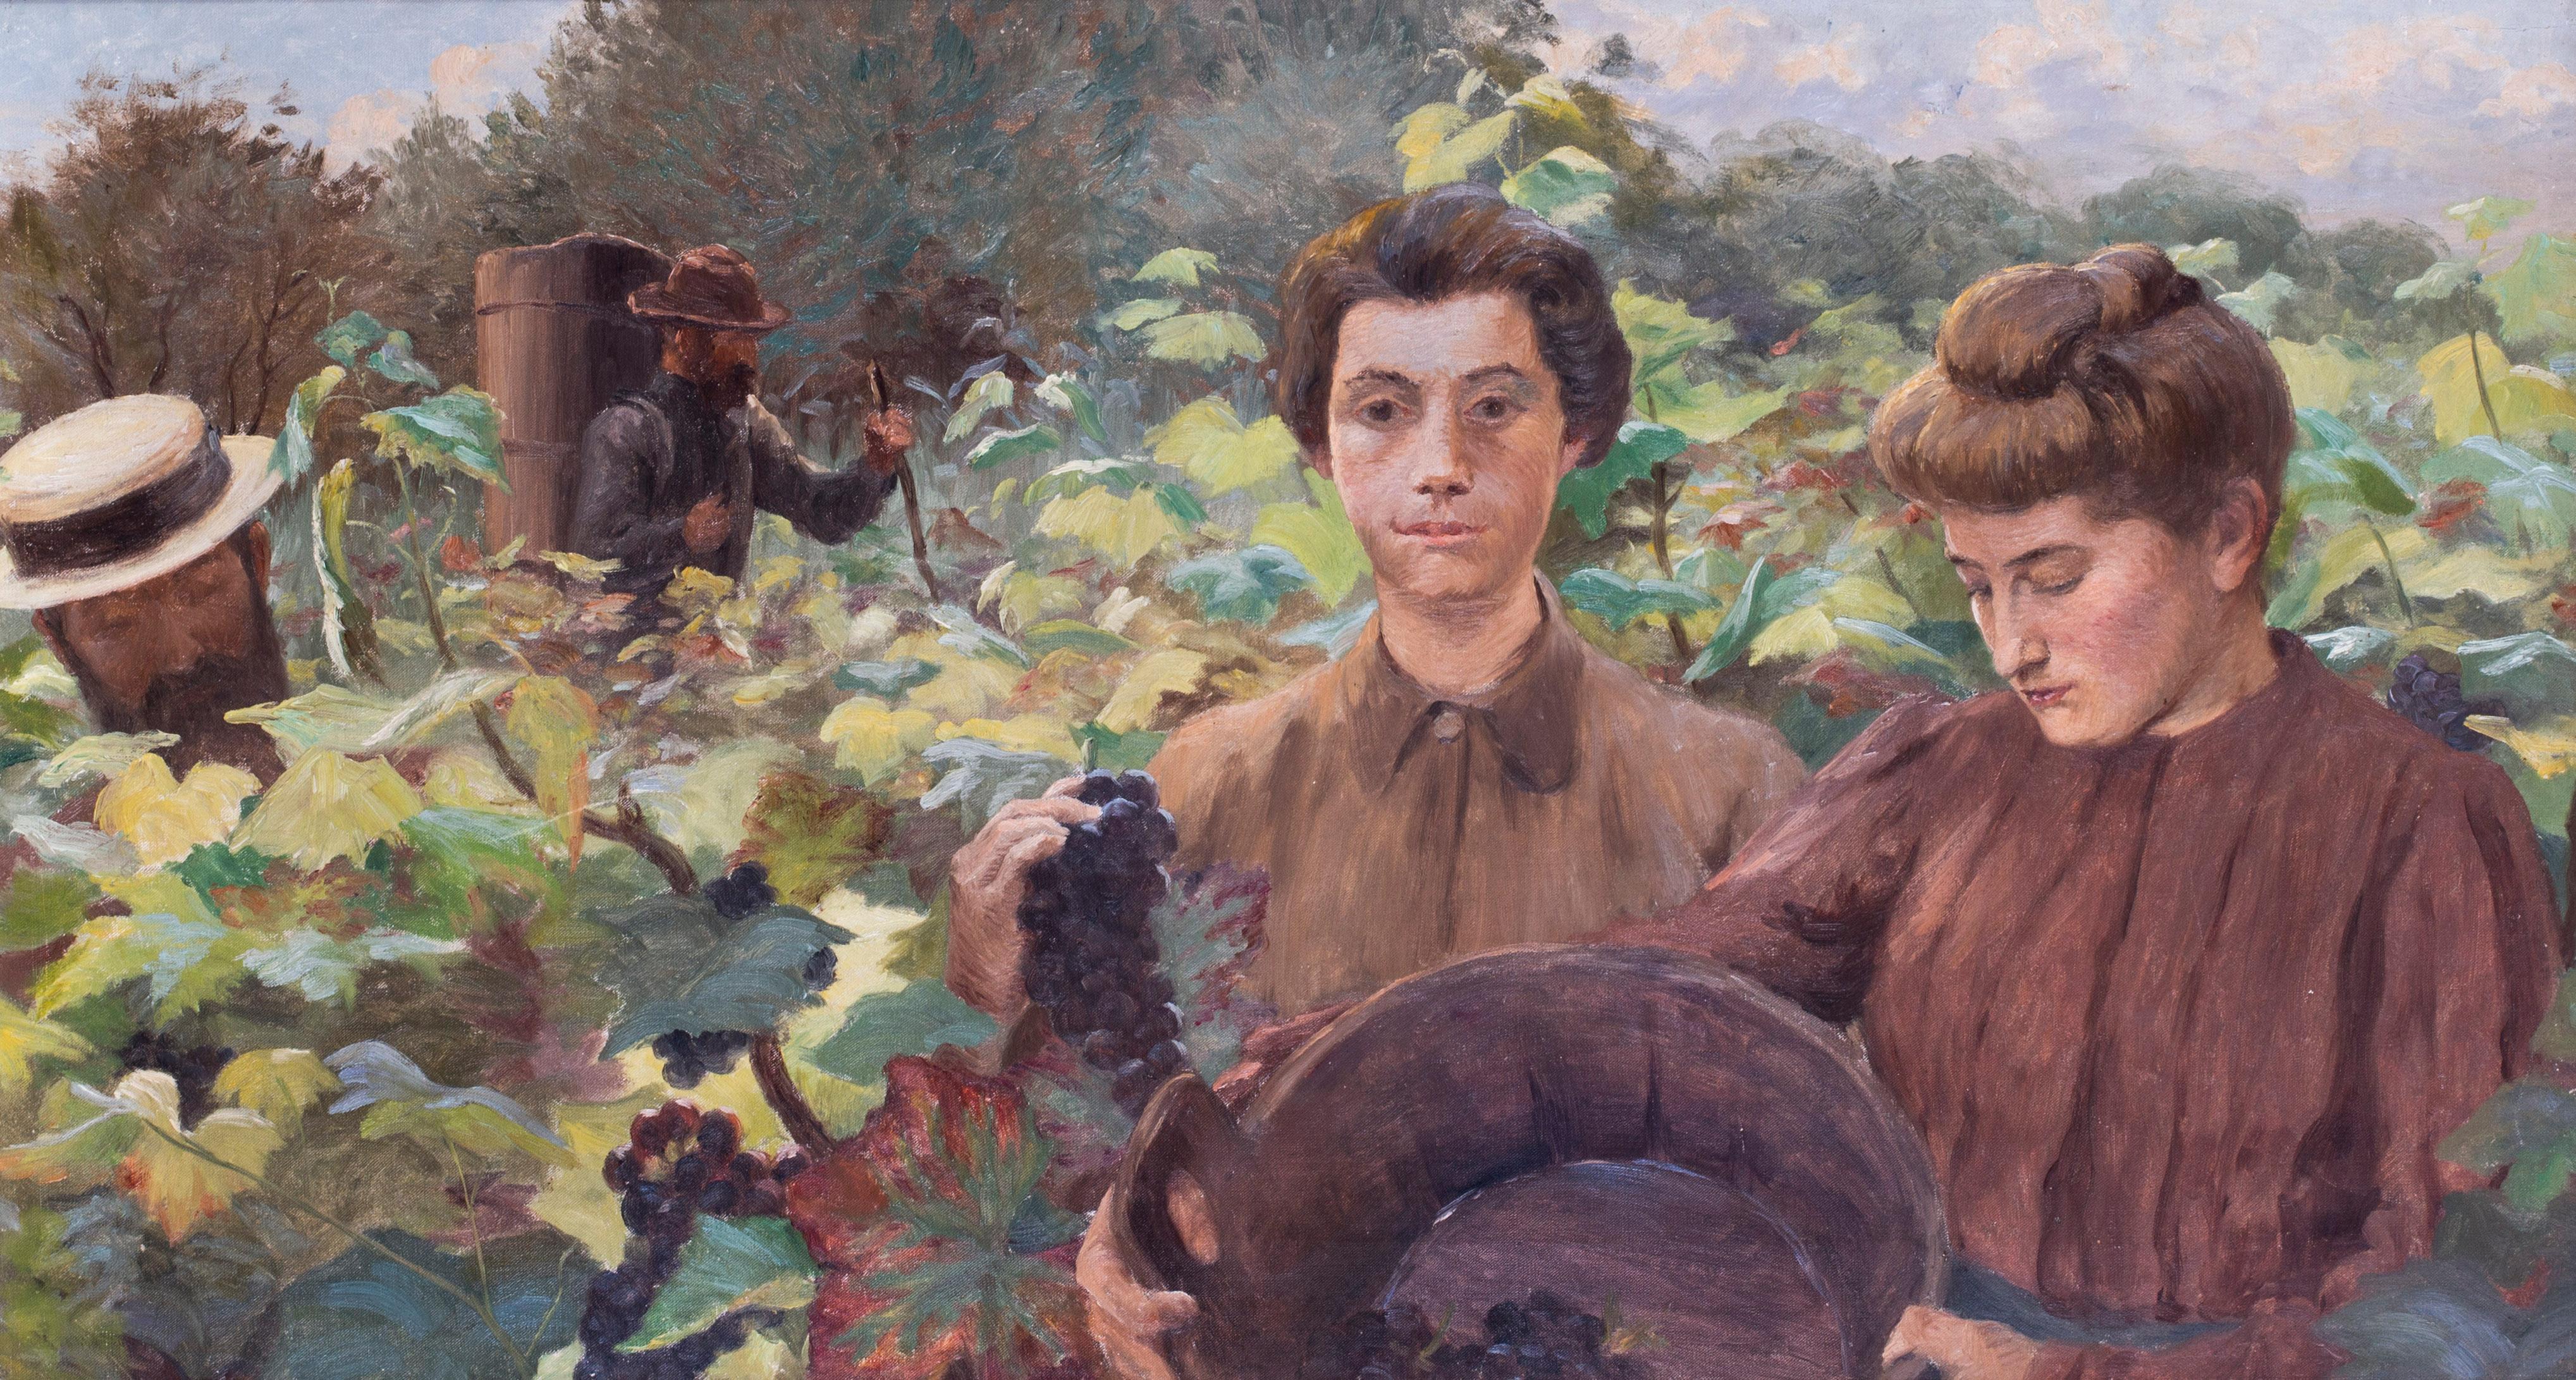 Peinture française du 19e siècle représentant des cueilleurs de raisins à la fin de l'été